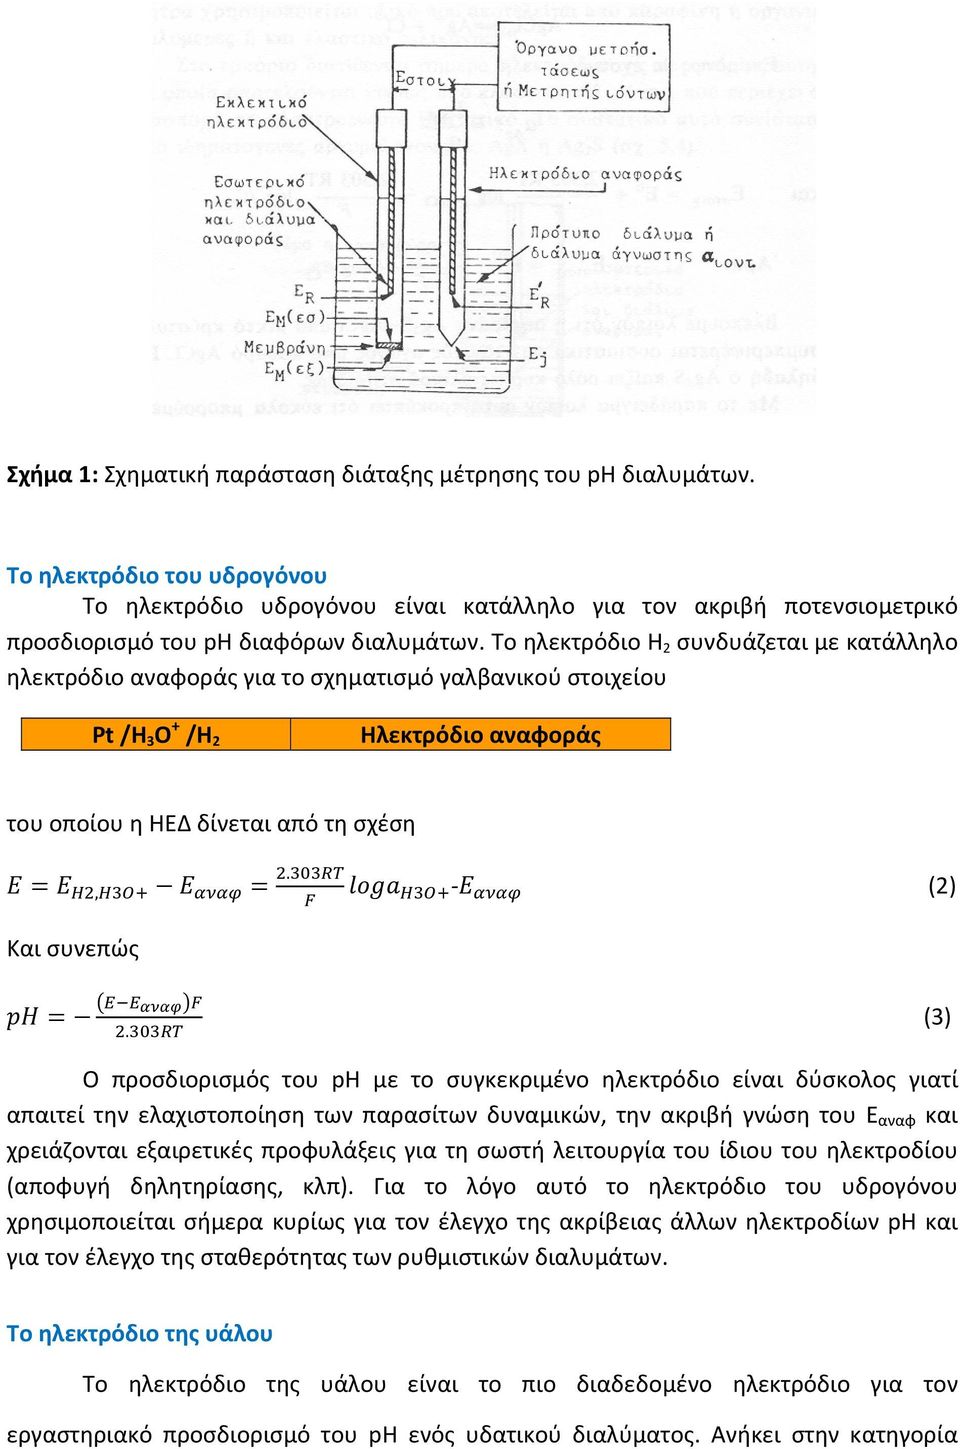 Το ηλεκτρόδιο Η 2 συνδυάζεται με κατάλληλο ηλεκτρόδιο αναφοράς για το σχηματισμό γαλβανικού στοιχείου Pt /Η 3 Ο + /Η 2 Ηλεκτρόδιο αναφοράς του οποίου η ΗΕΔ δίνεται από τη σχέση,. (2) Και συνεπώς.